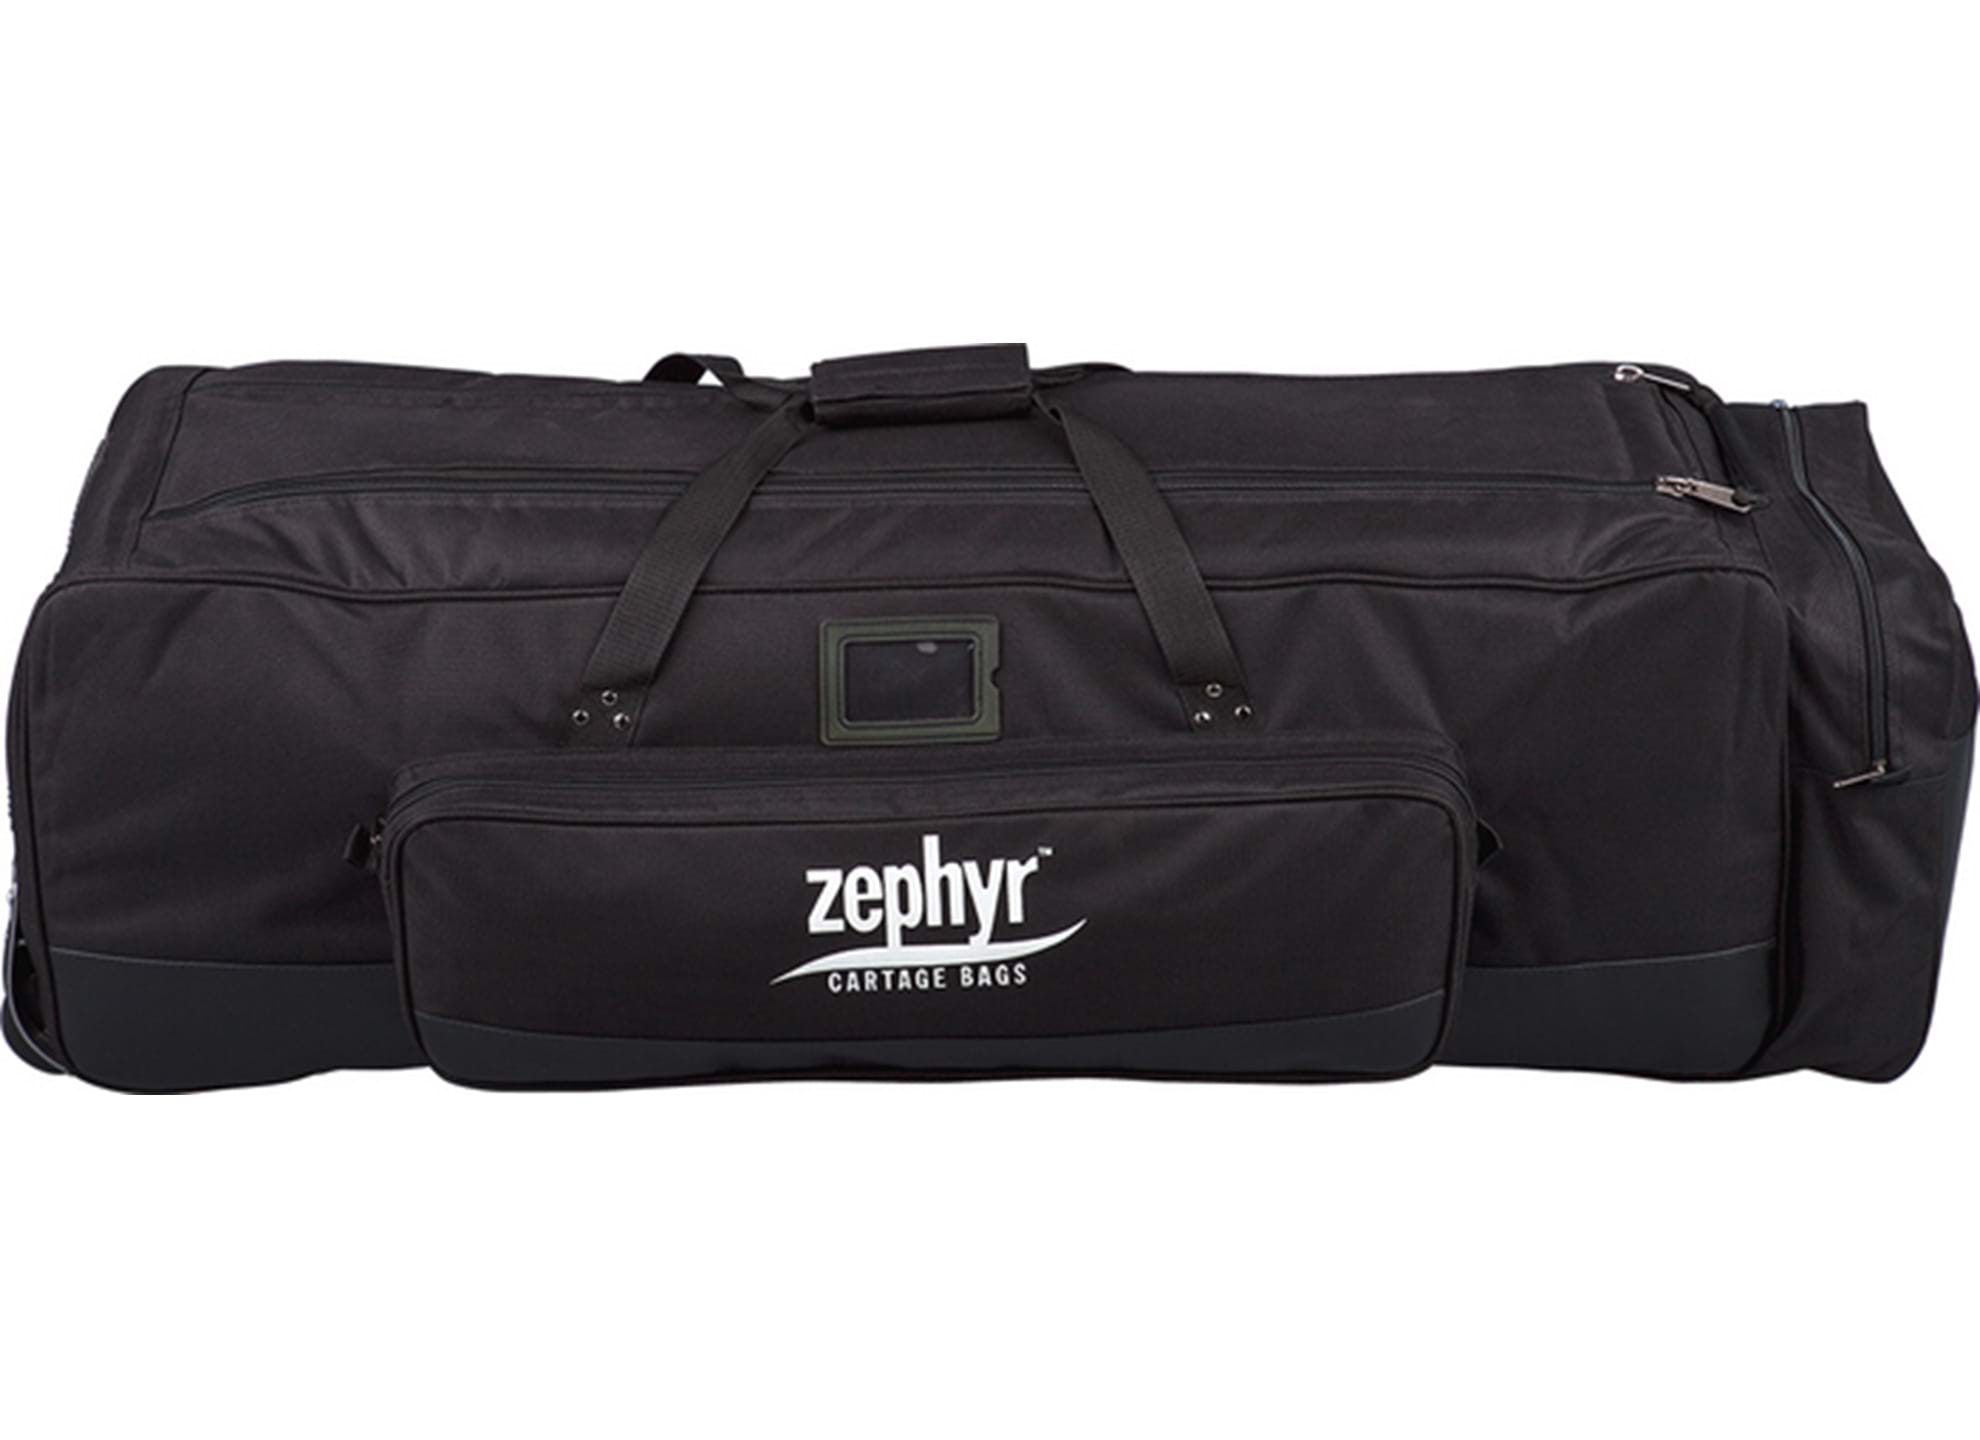 Zephyr Rolling Hardware Bag